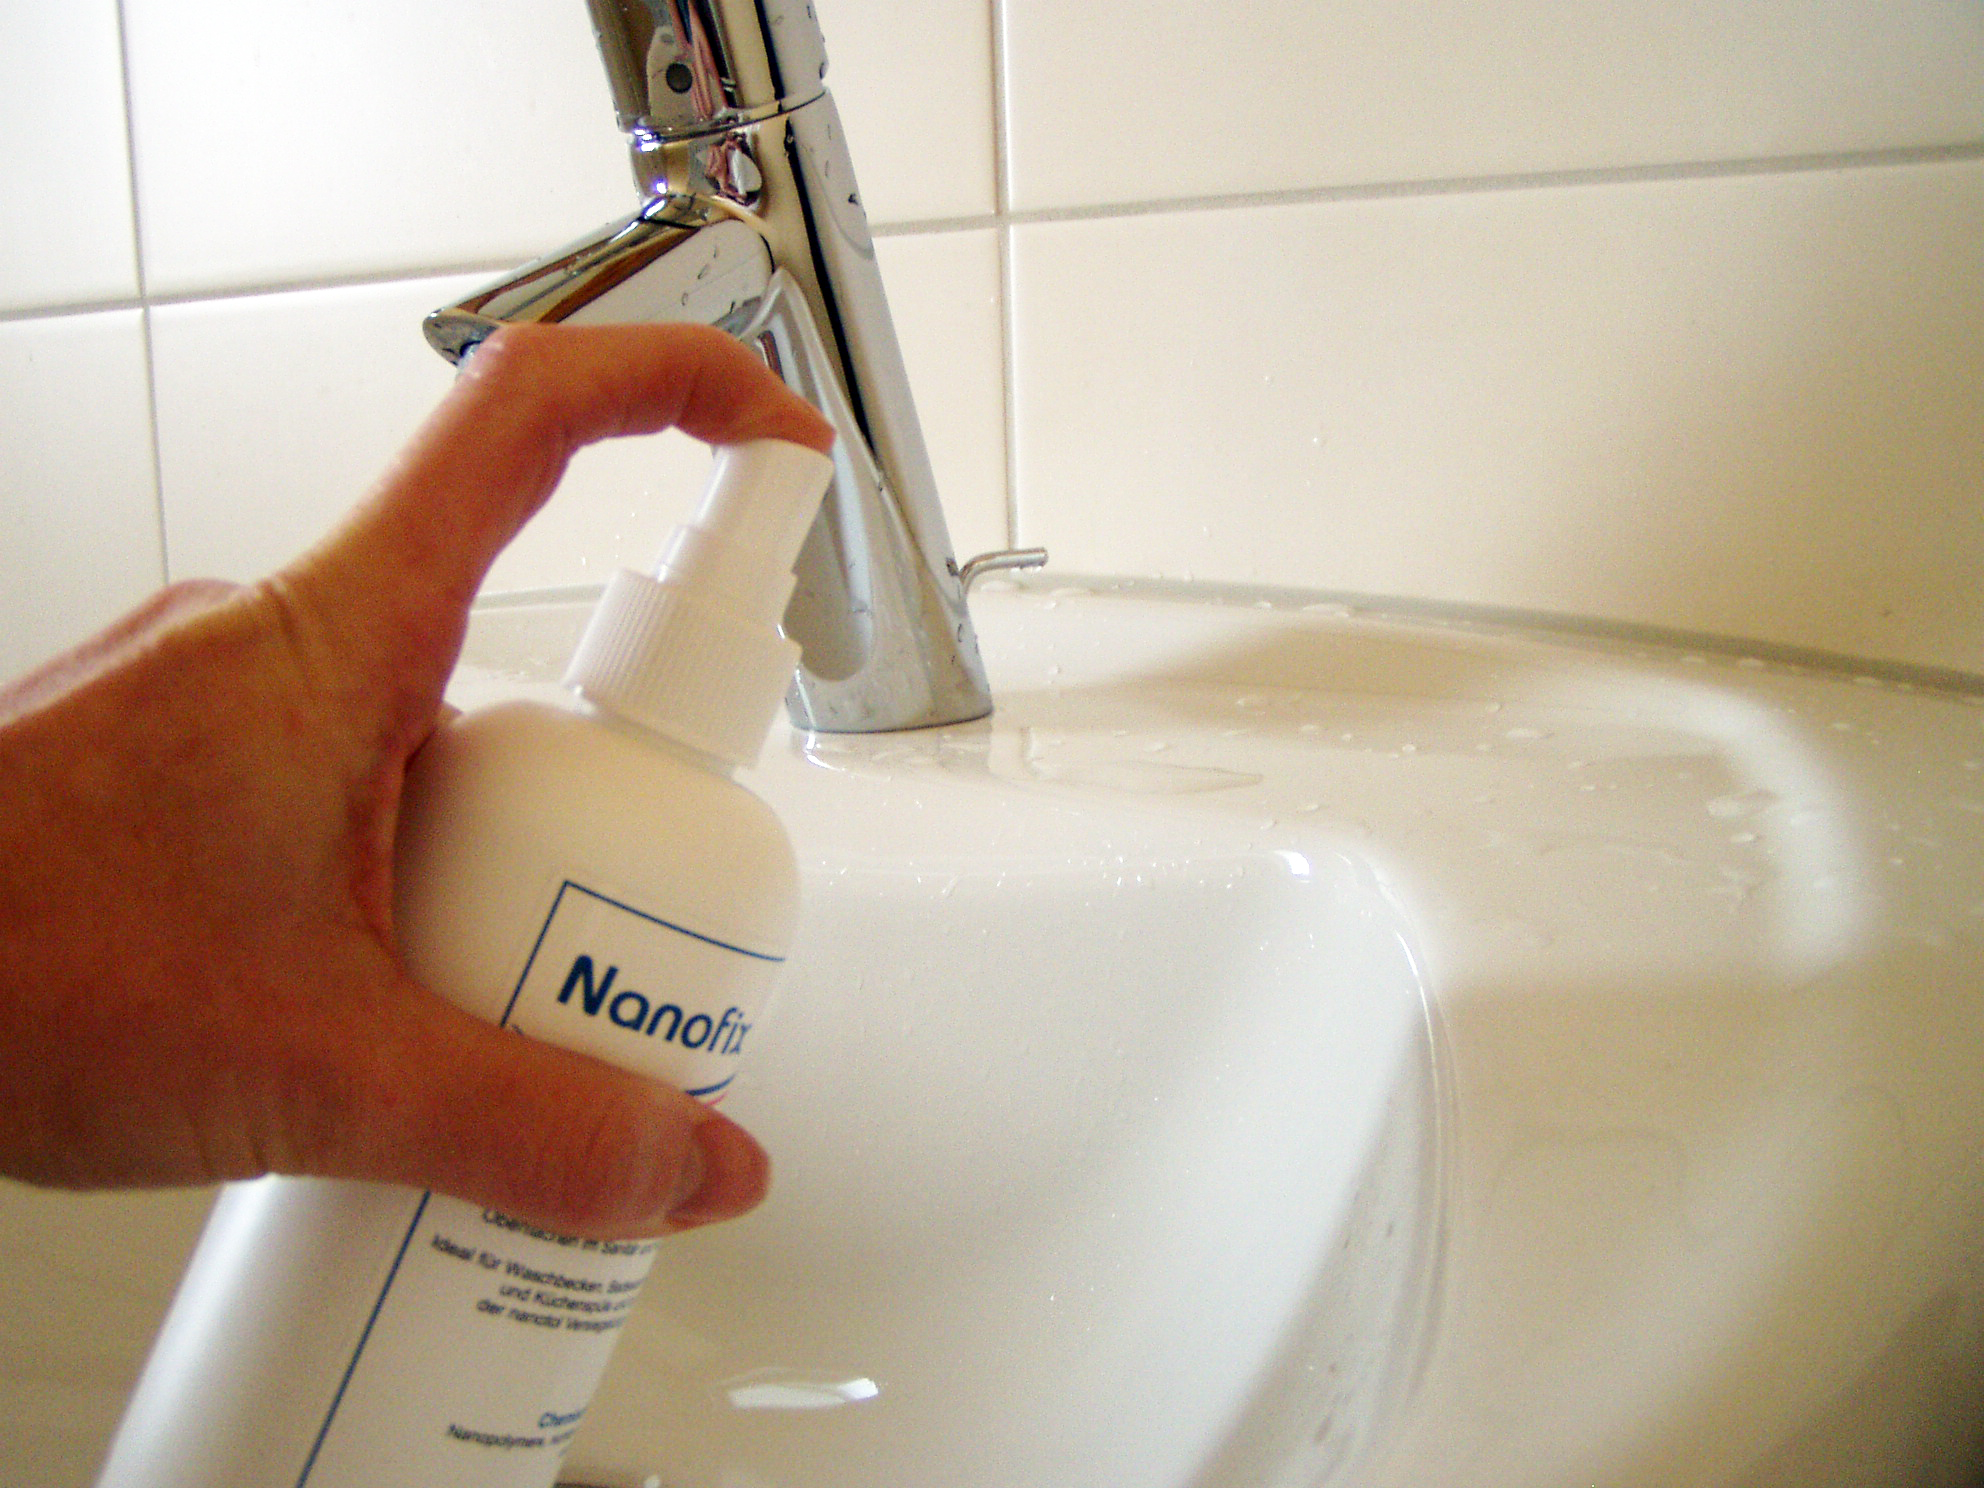 Nanox Anwednung am Waschbecken